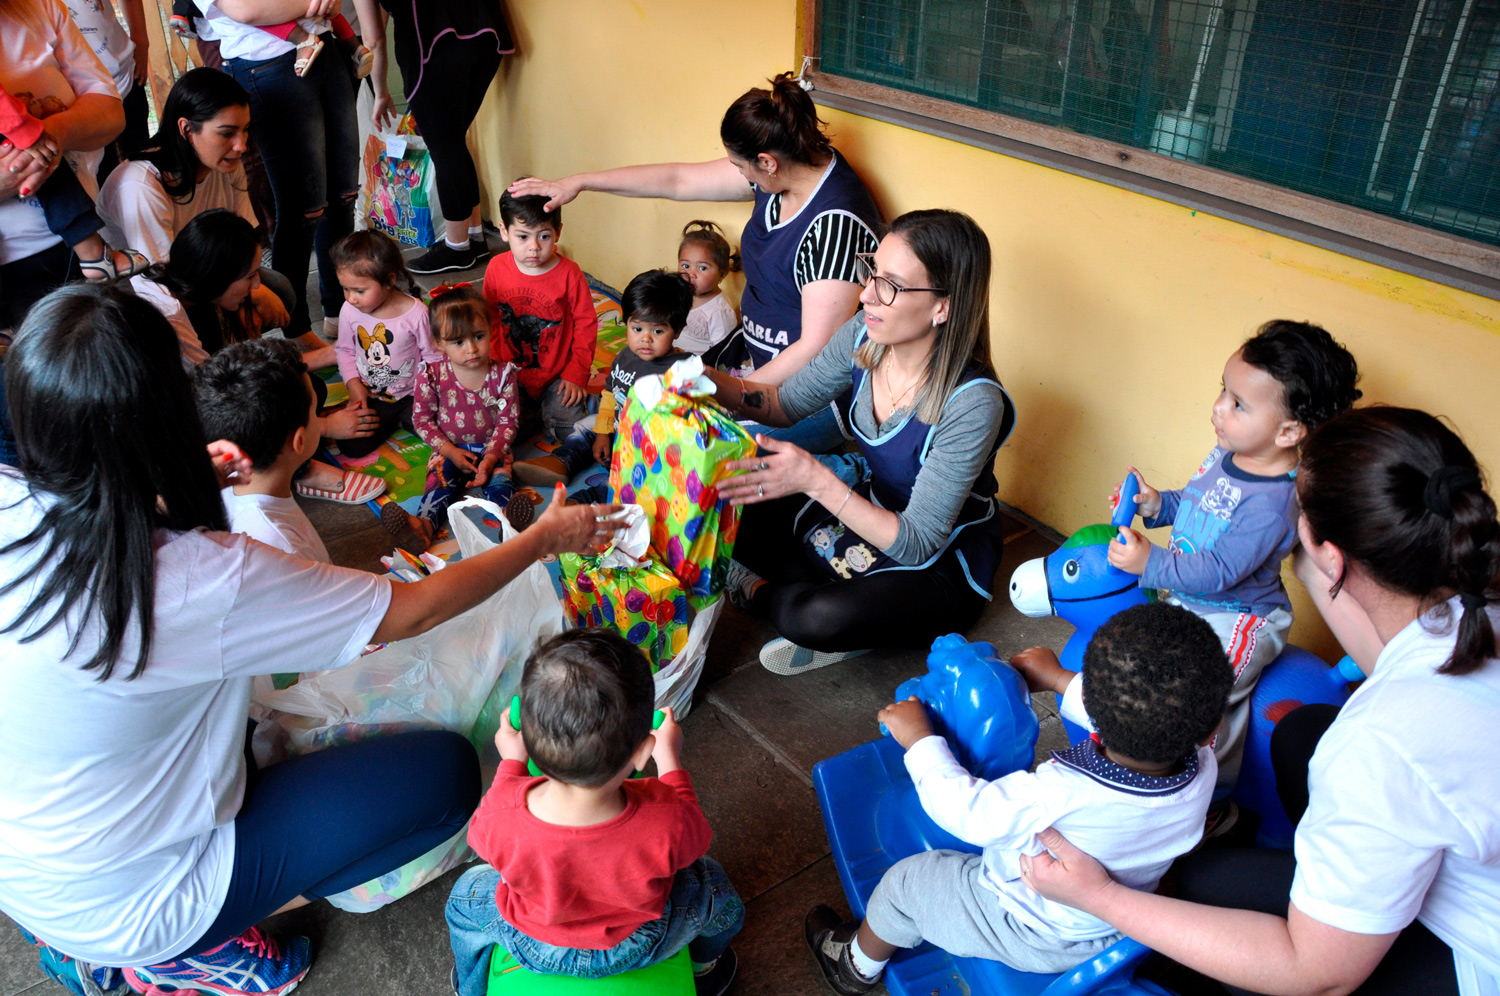 A equipe estreiou os brinquedos e compartilhou guloseimas com as crianças. Foto: Divulgação/Eduardo Vargas de Almeida